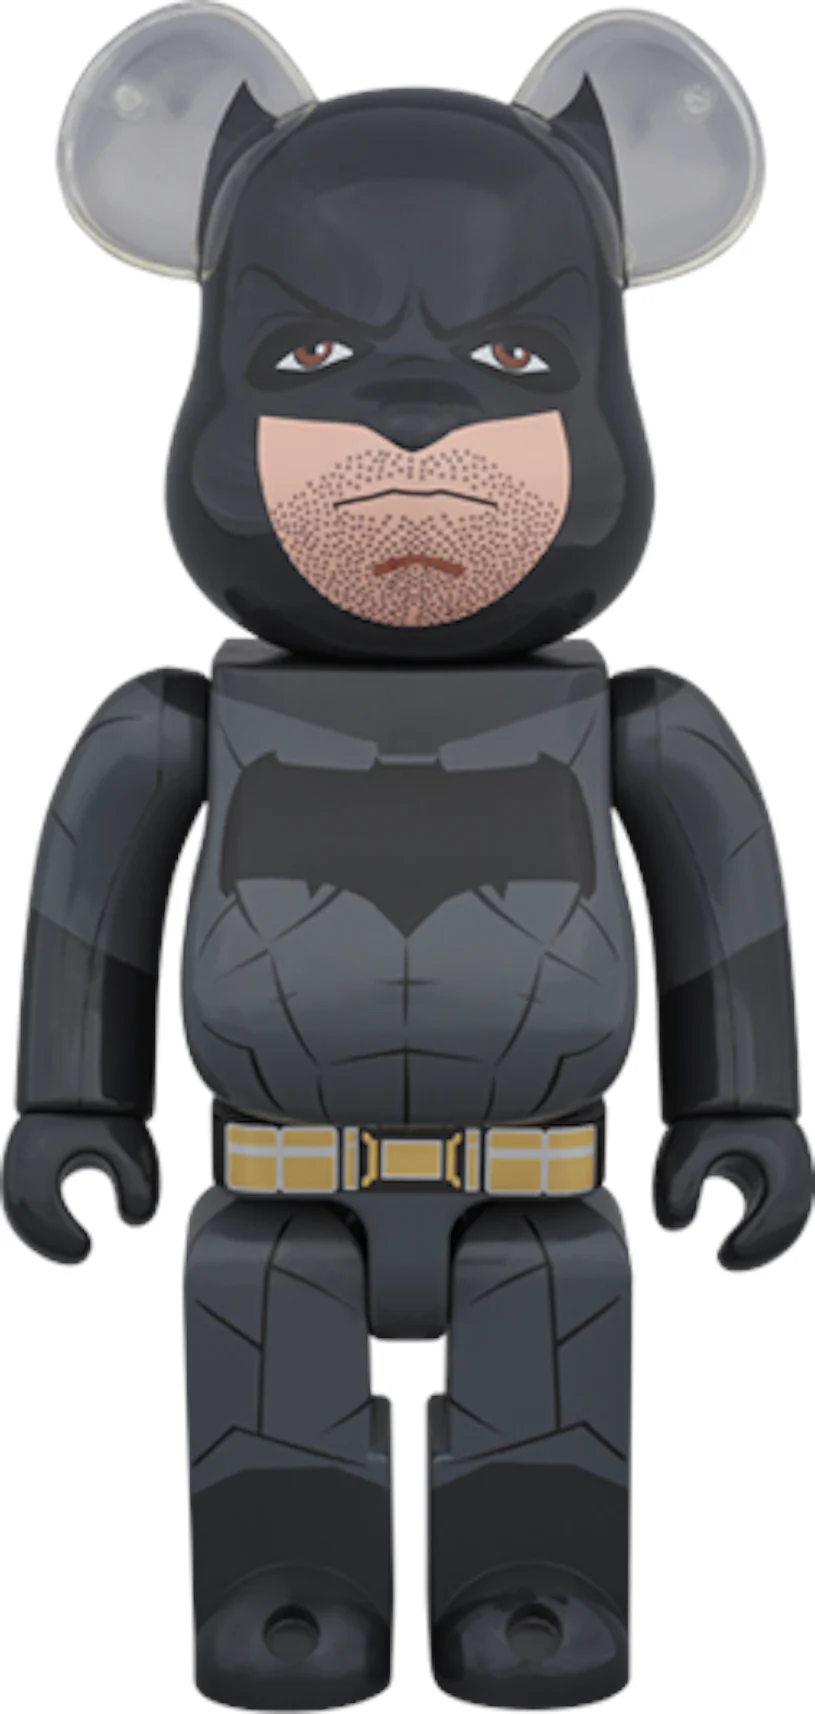 Bearbrick Batman 400% Black - US